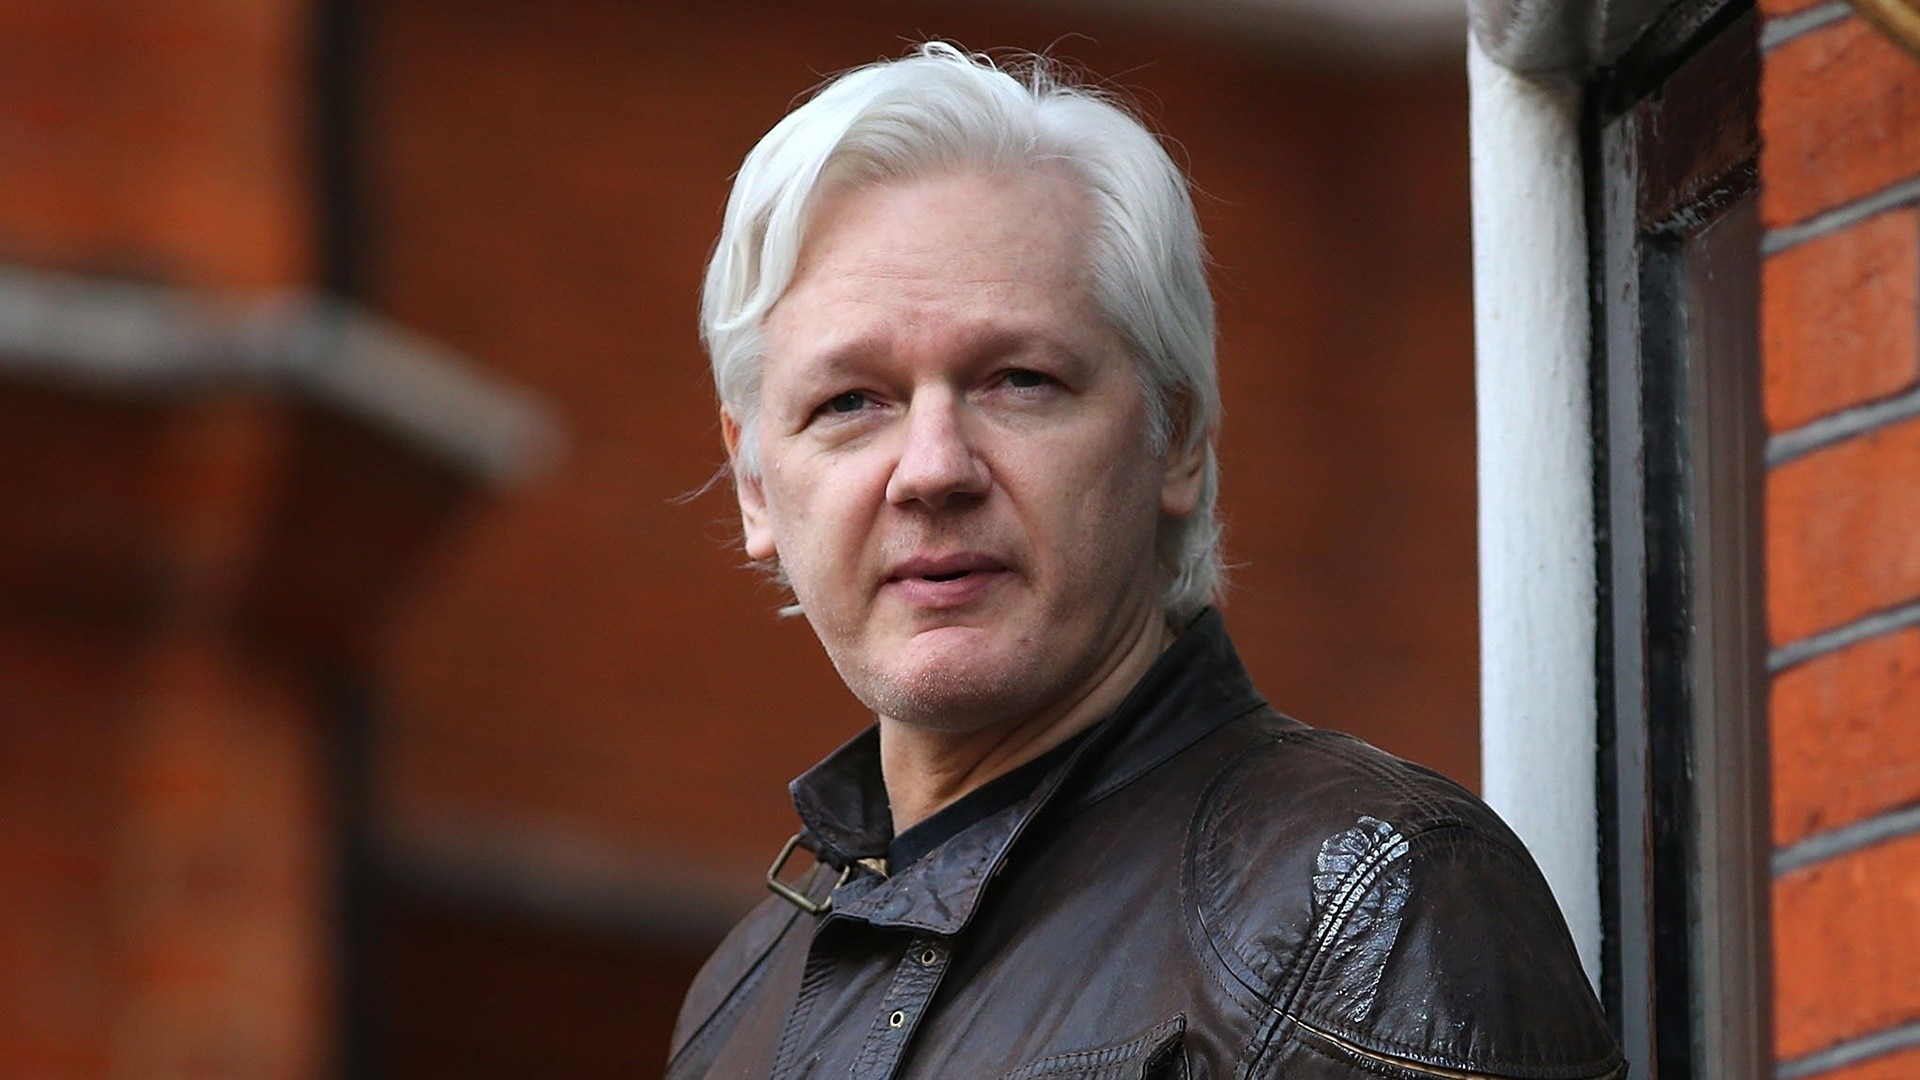 Wikileaks Wallpapers